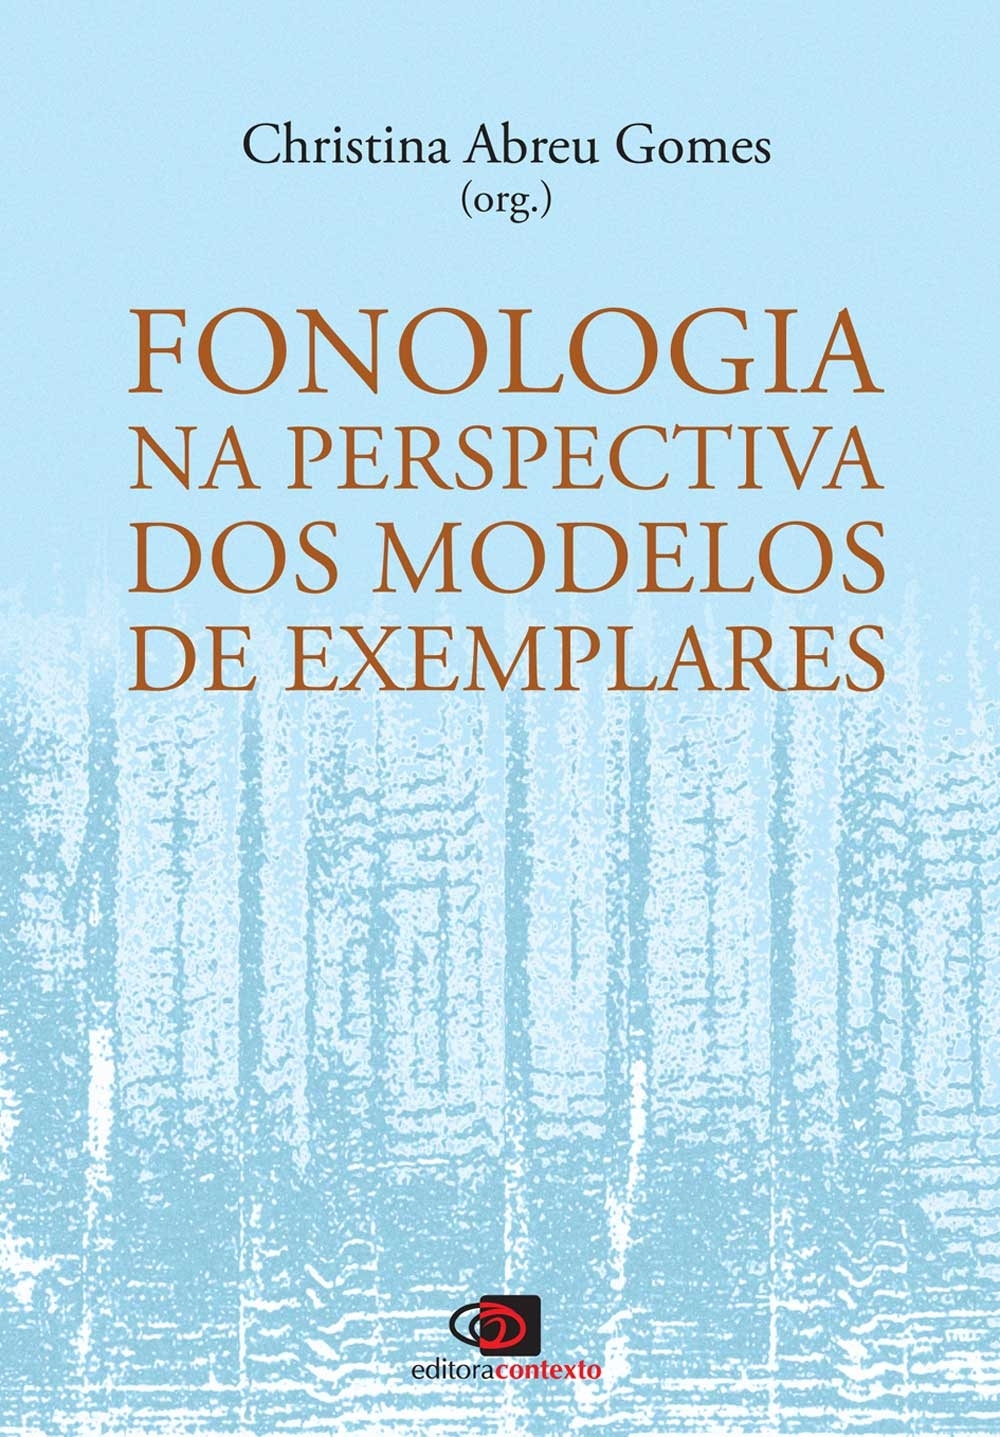 Fonologia na perspectiva dos modelos de exemplares: para além do dualismo natureza, cultura na ciência linguística